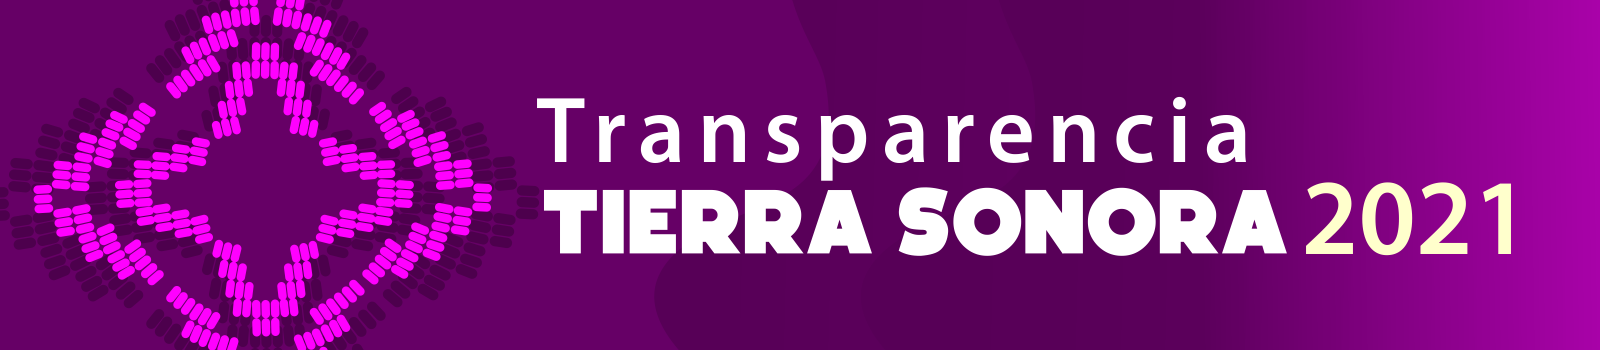 Transparencia Tierra Sonora 2021.